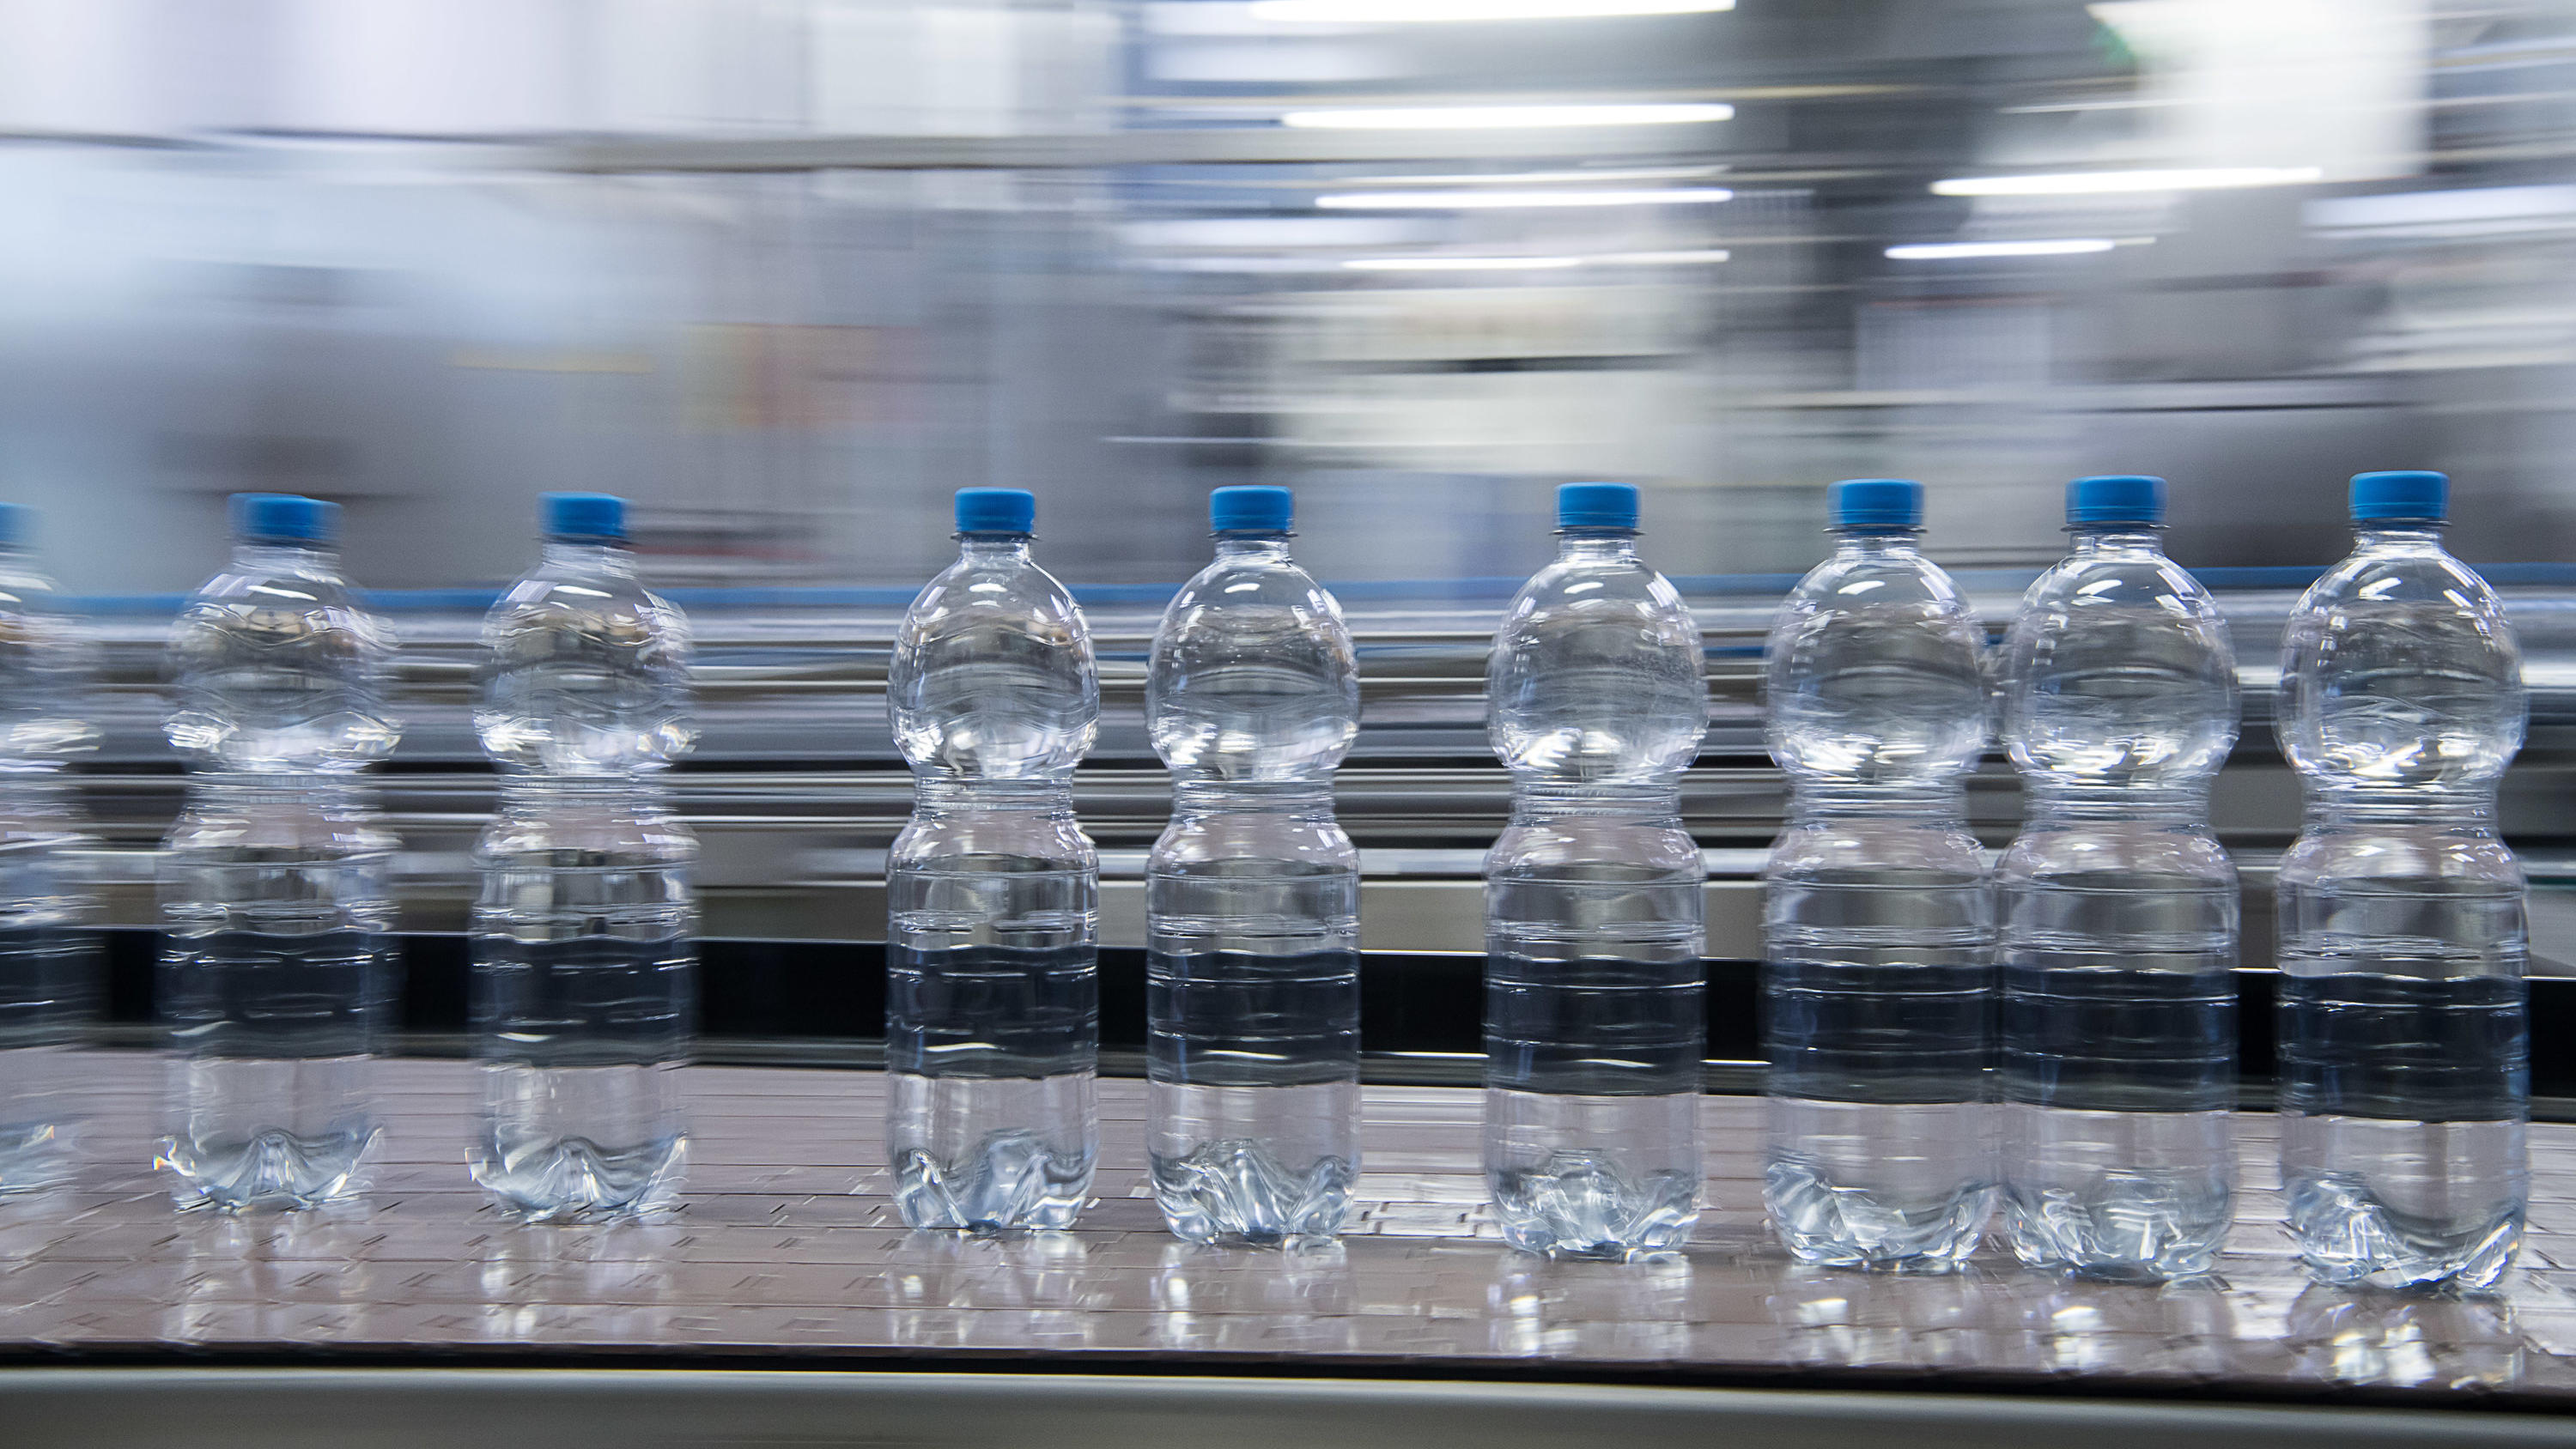 ARCHIV - 31.07.2018, Baden-Württemberg, Ensingen: Flaschen mit Mineralwasser sind in der Produktion des Getränkeherstellers Ensinger auf der Produktionsstrecke. In Deutschland ist im vergangenen Jahr weniger Mineralwasser produziert worden. (zu dpa «